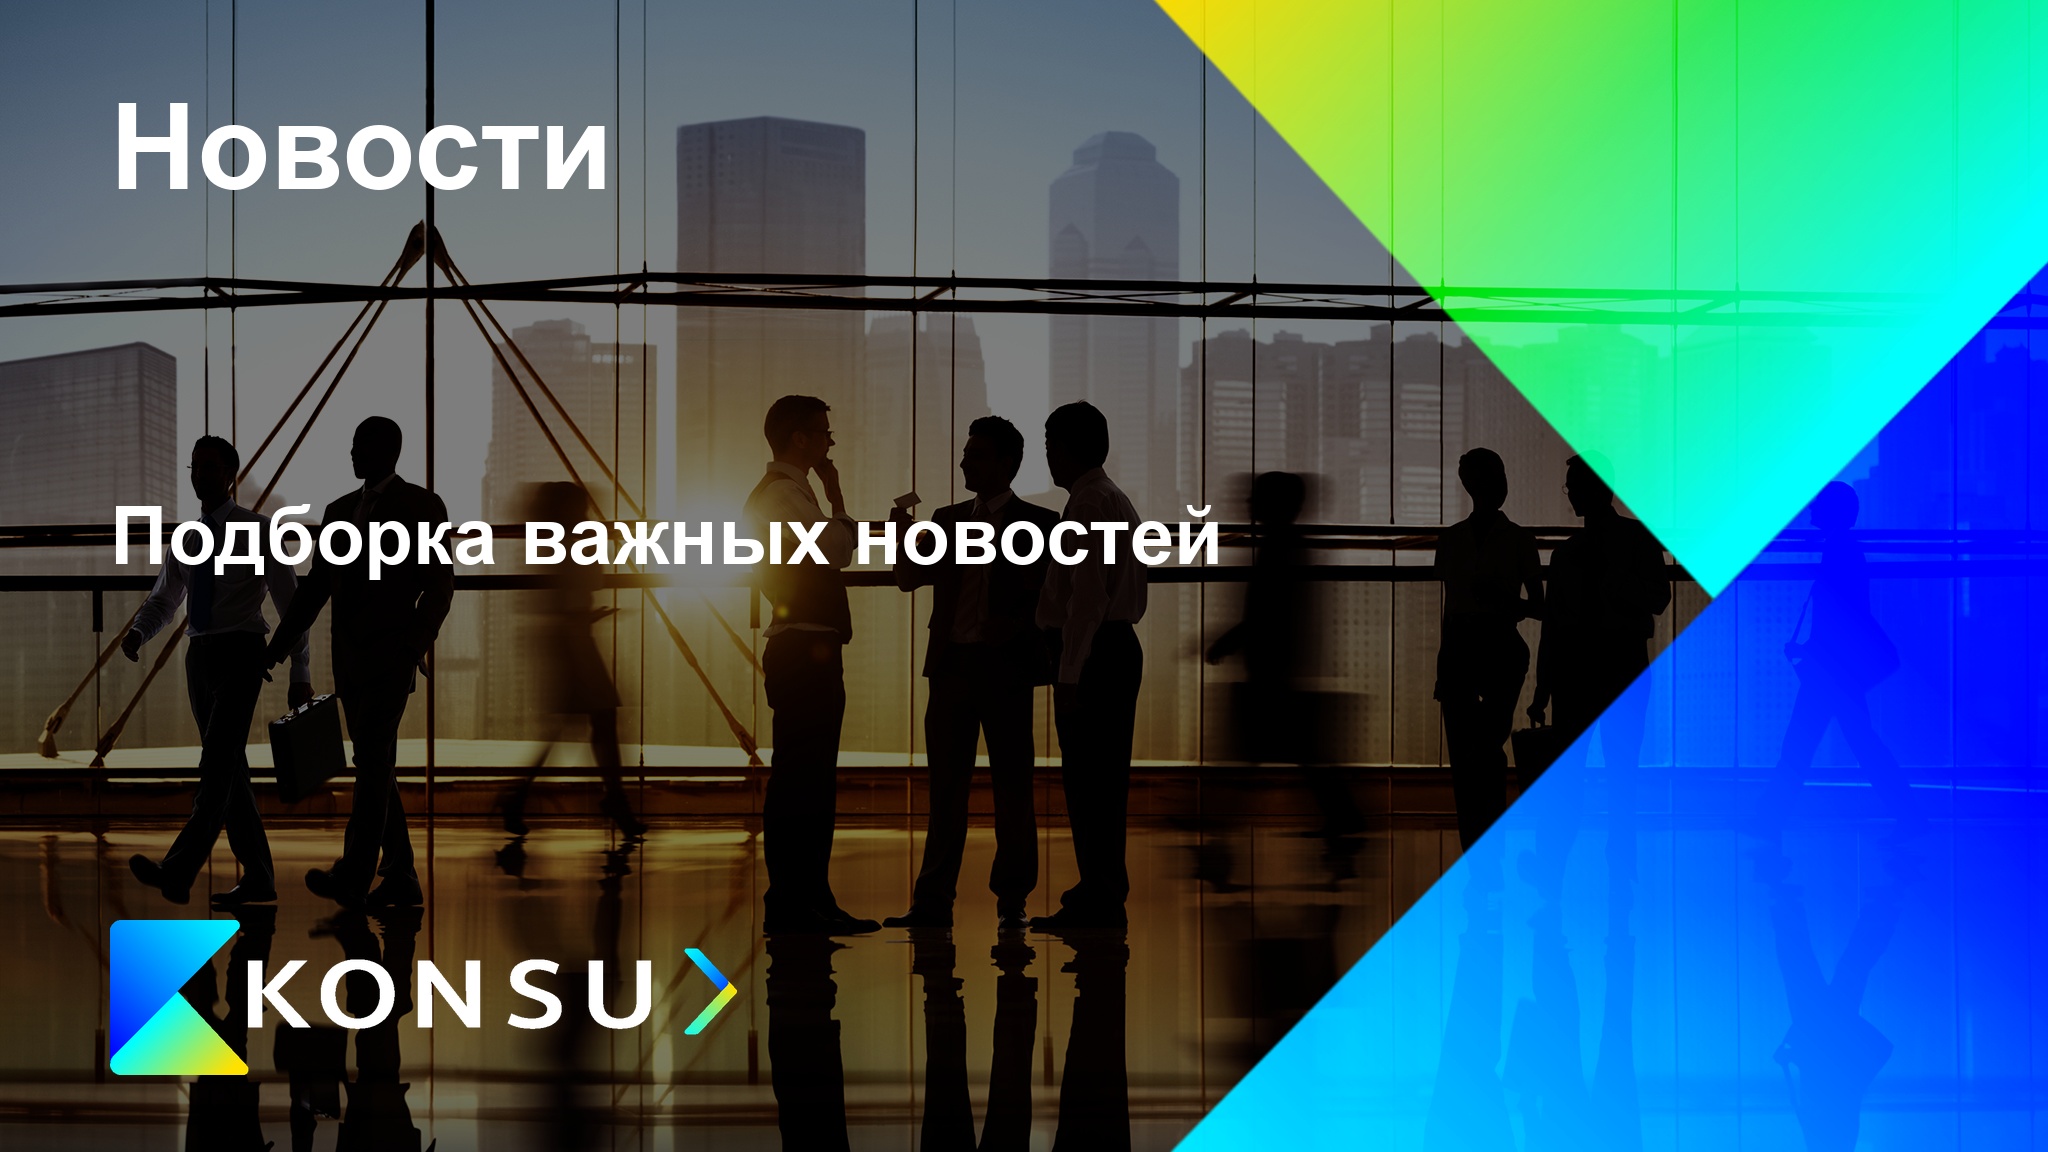 Podborka vazhnyh novostej ru konsu outsourcing consulting ru kz (2)